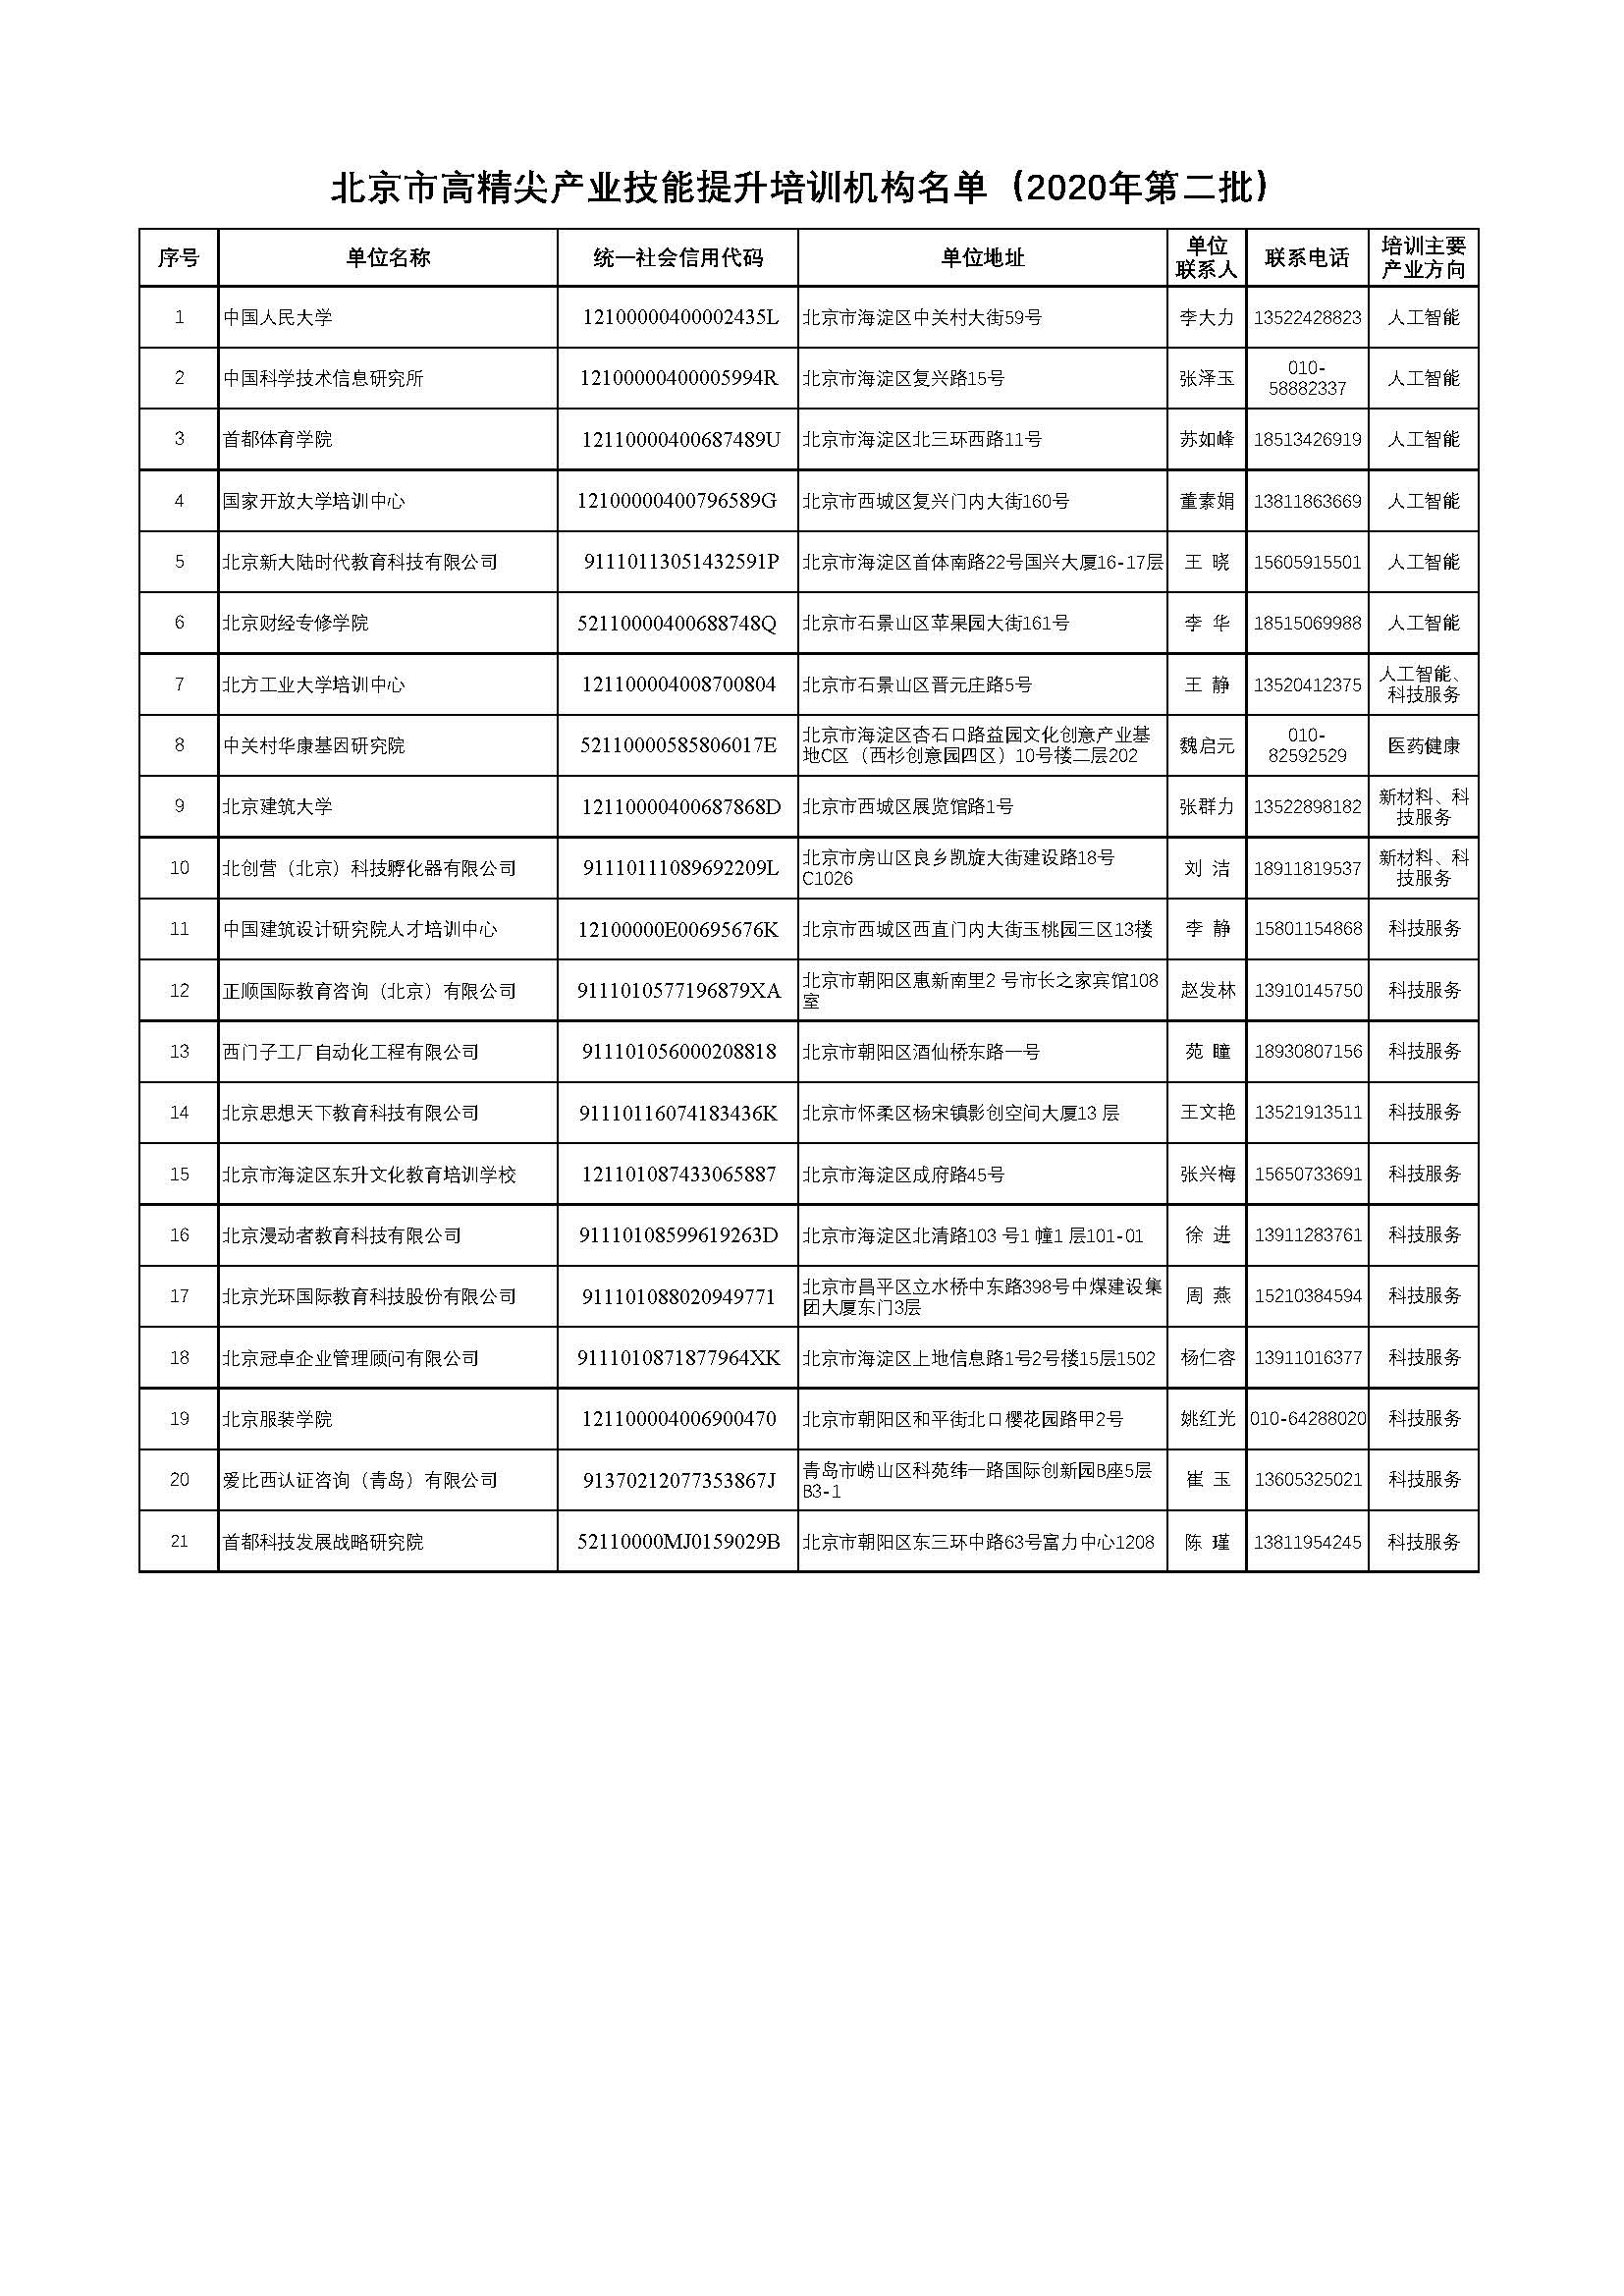 3.北京市高精尖产业技能提升培训机构名单（2020年第二批）.jpg